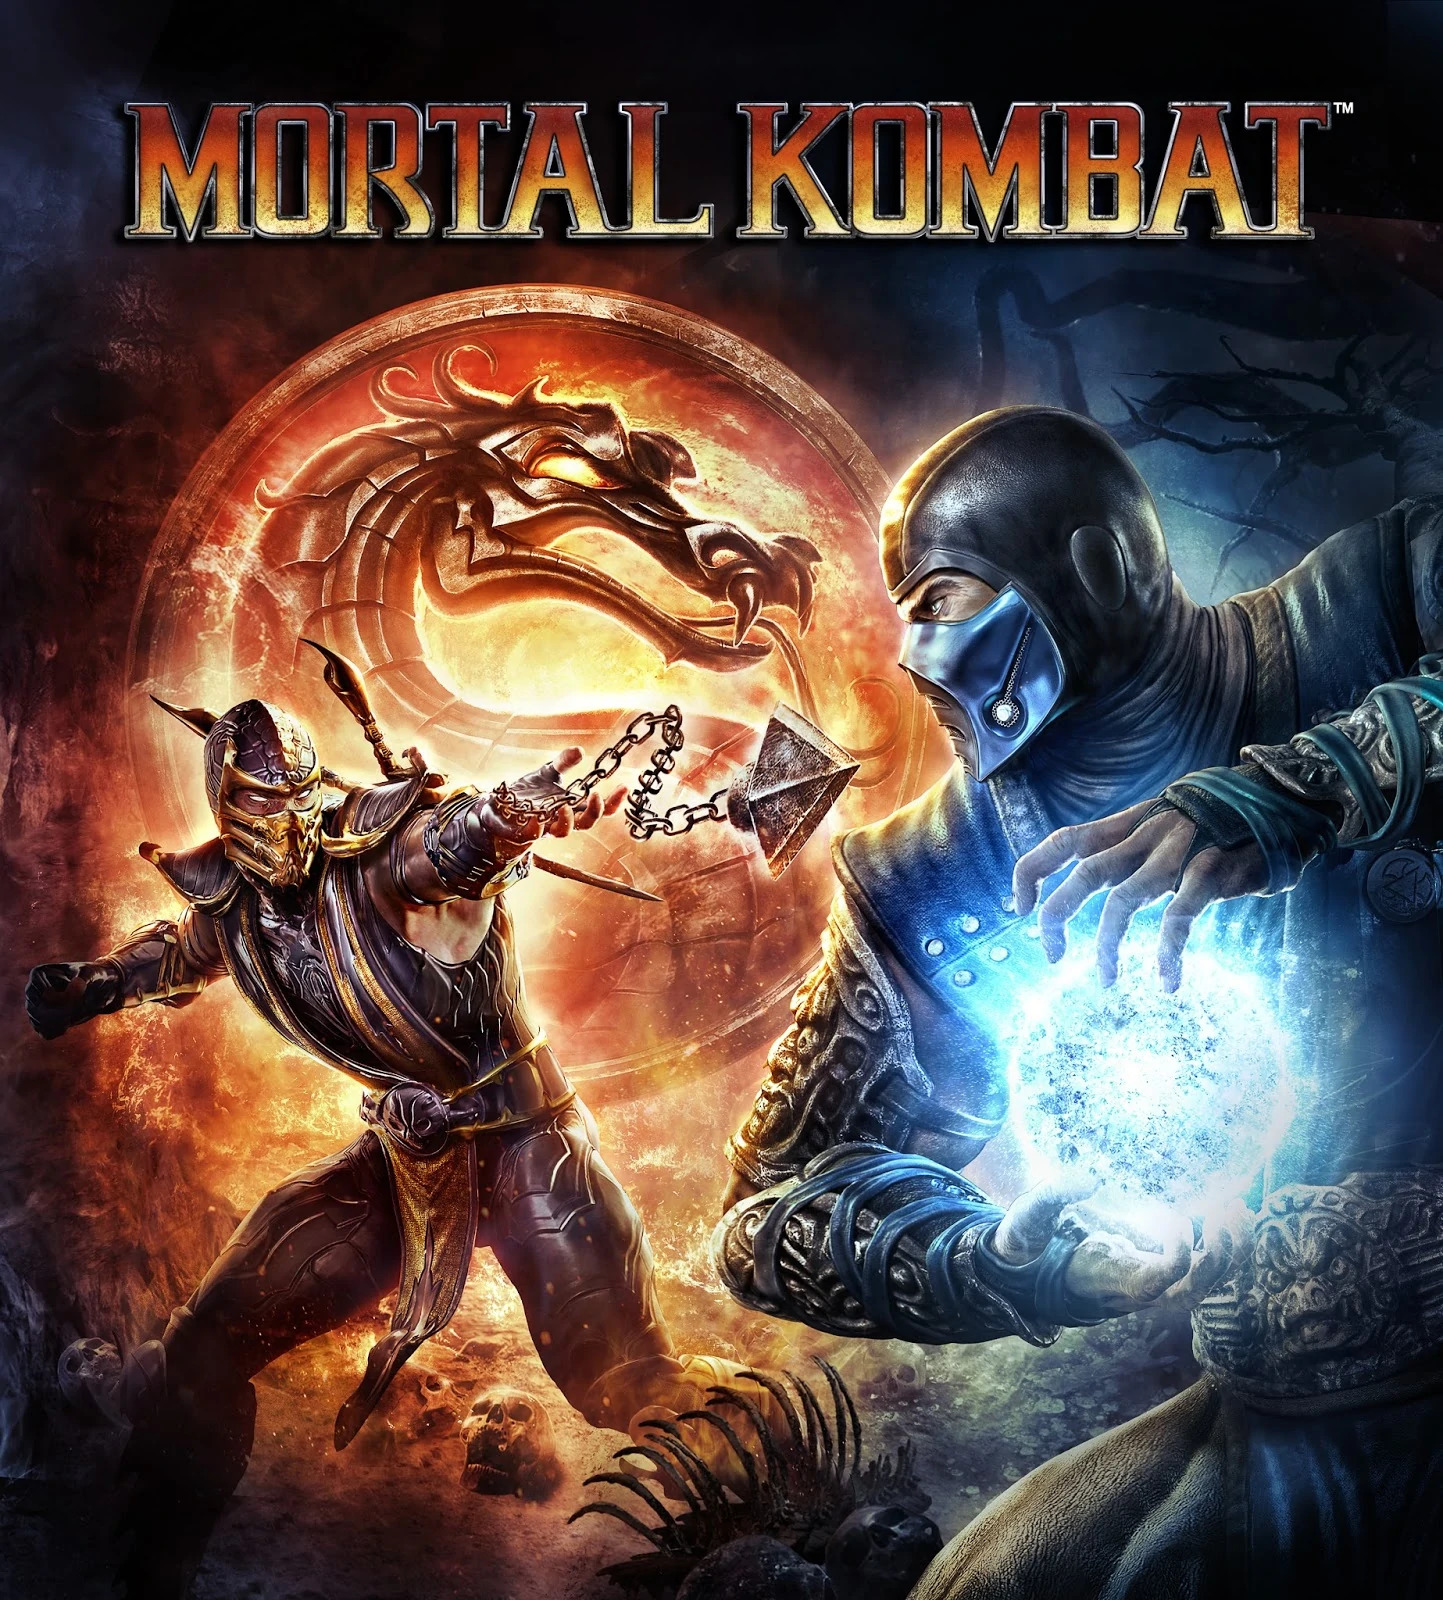 Okay here are samples of reptile for Mortal Kombat 12 : r/MortalKombat